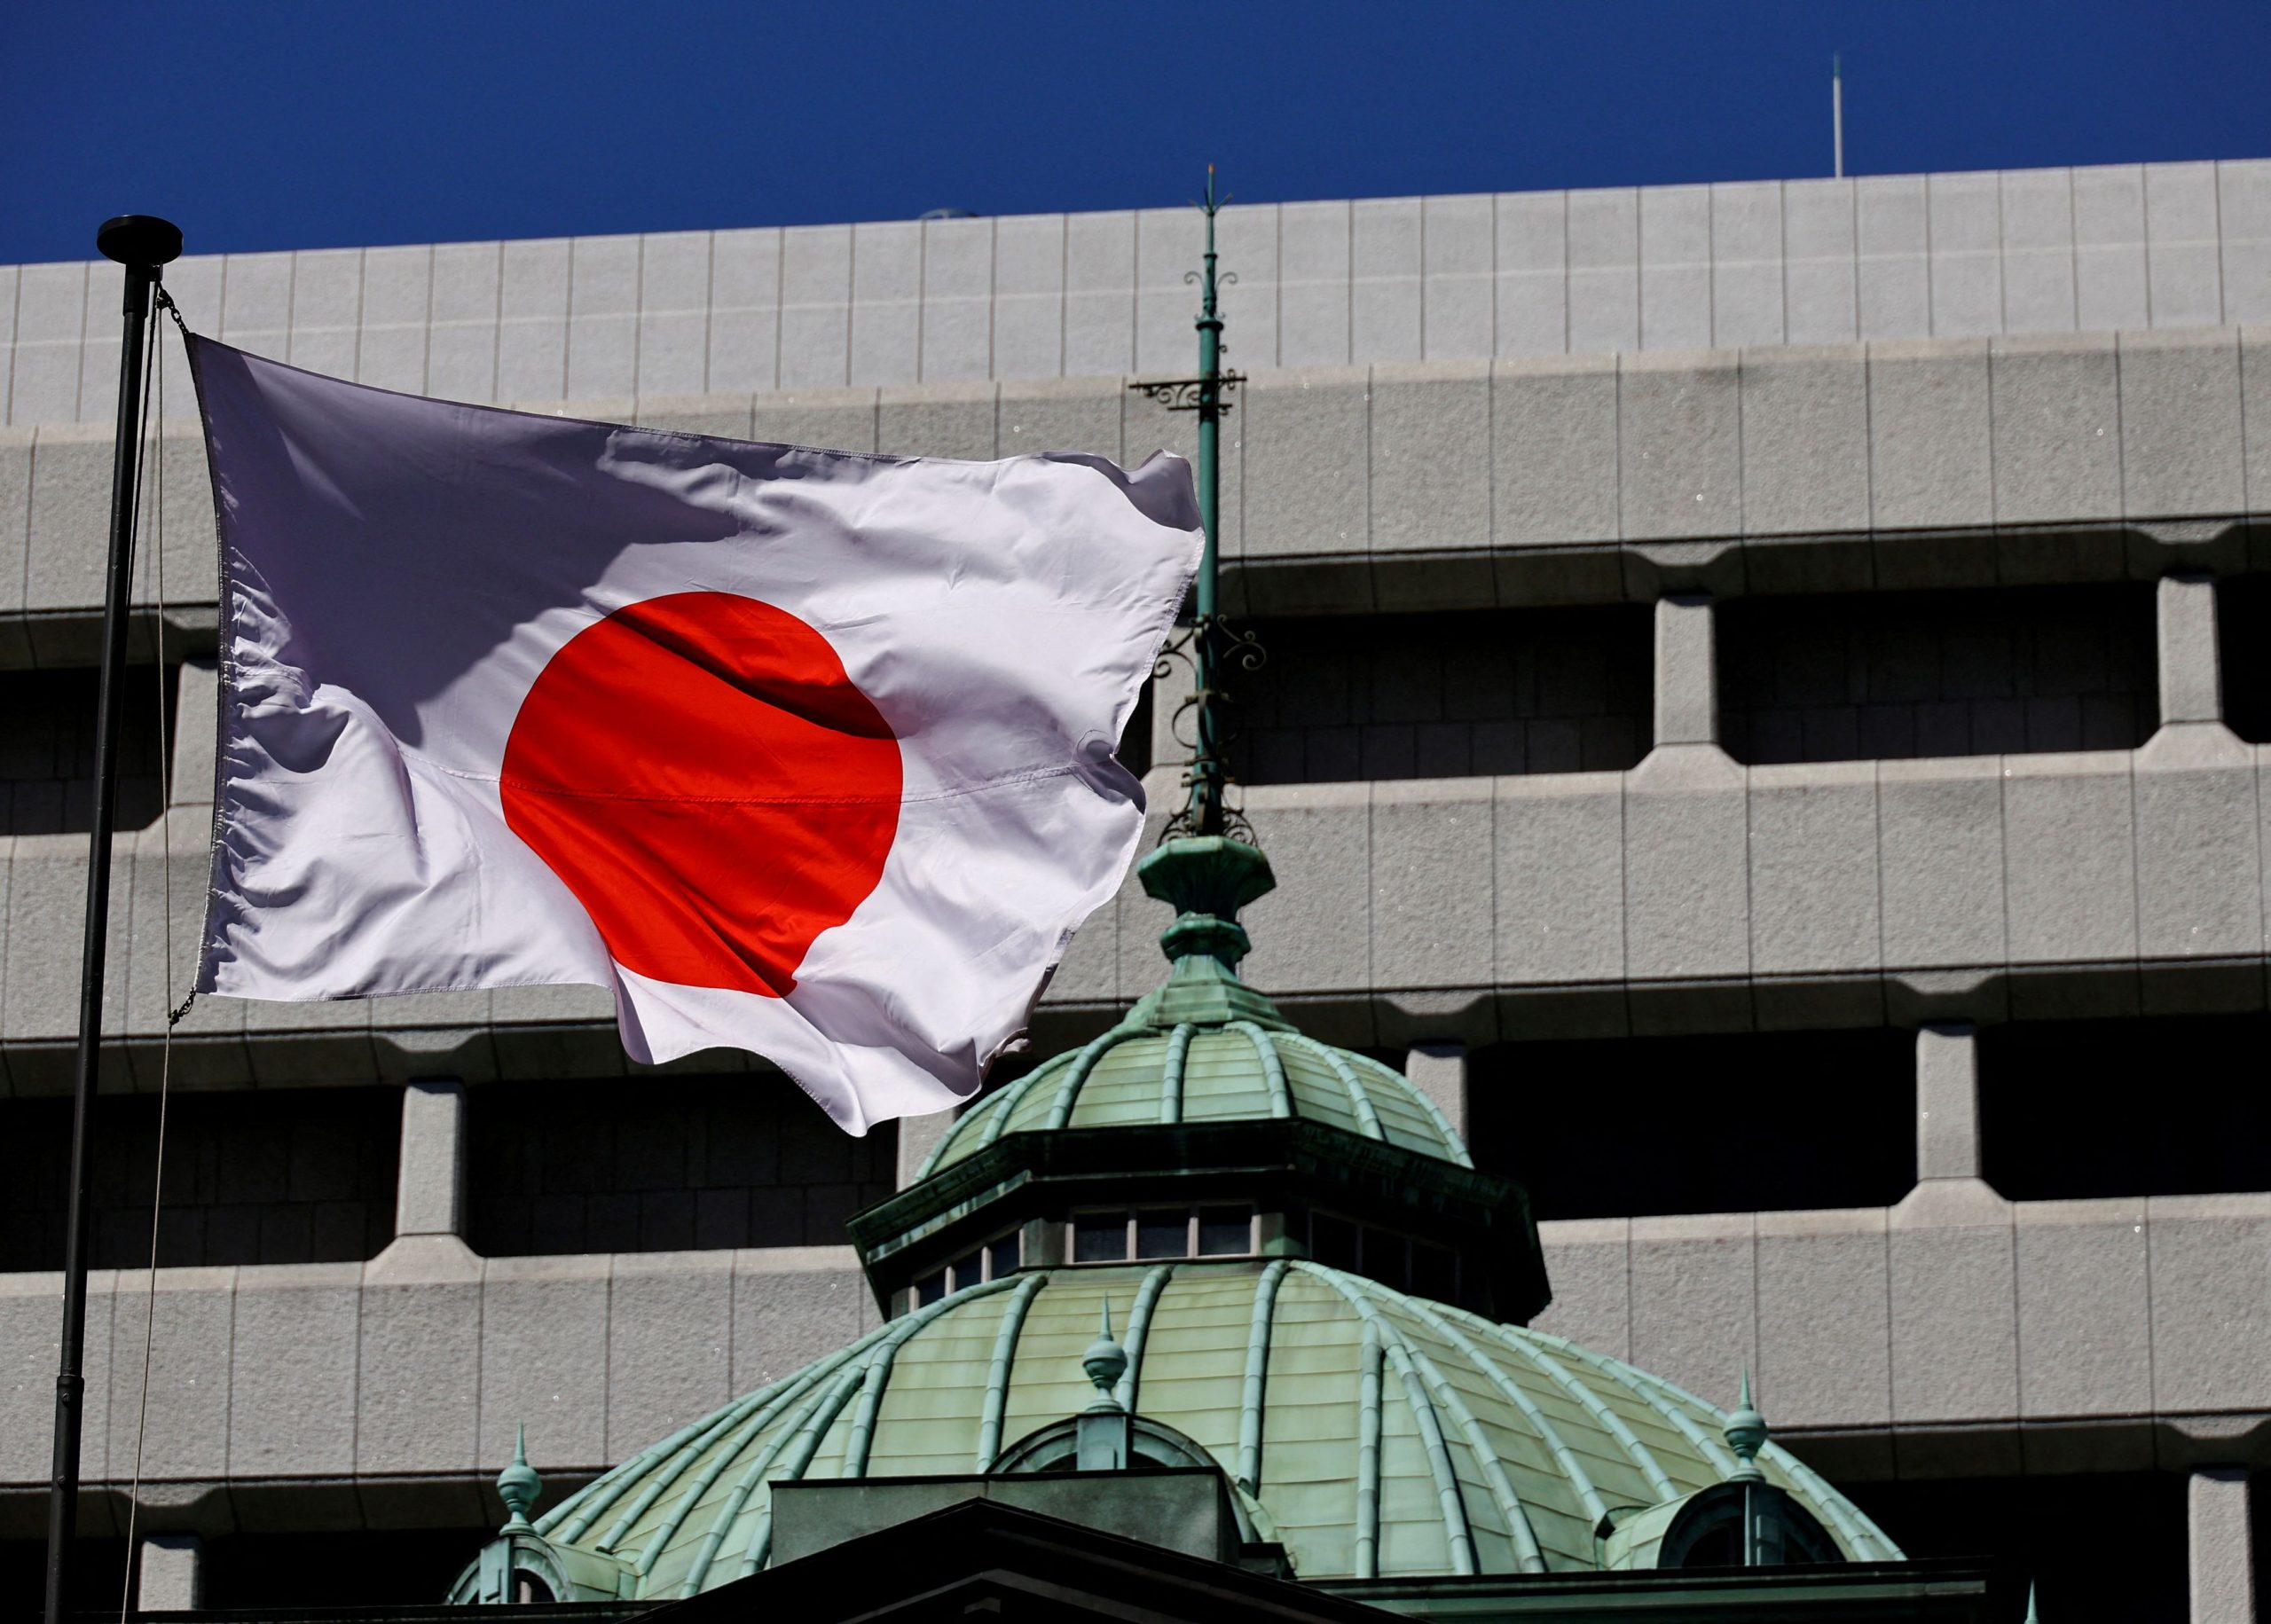 Ιαπωνία: Οι πραγματικοί μισθοί μειώθηκαν για 23ο συνεχόμενο μήνα